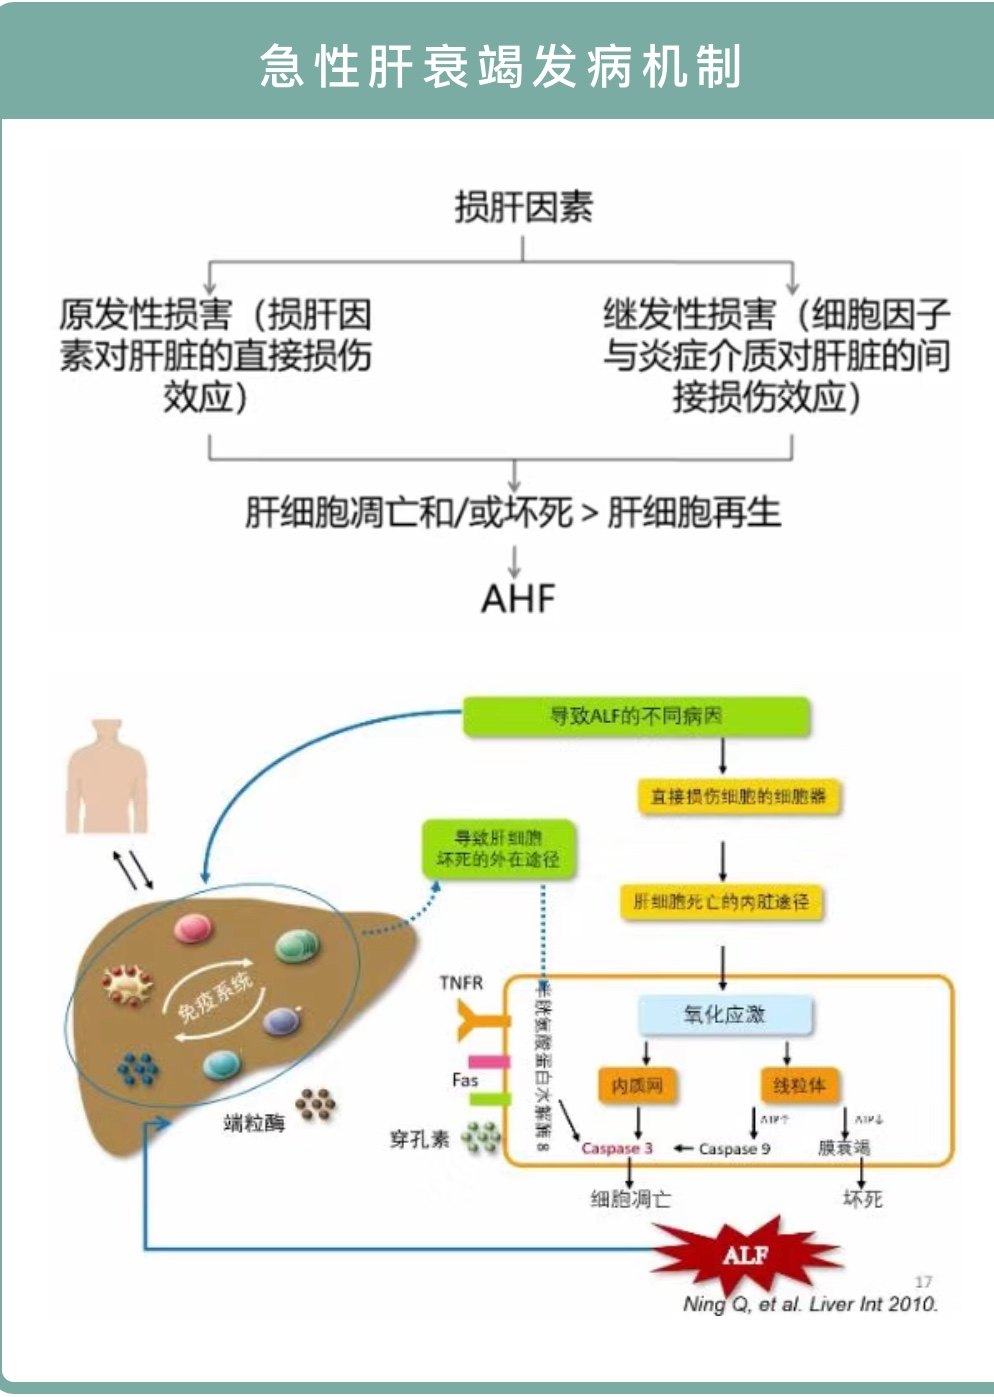 孟庆华教授:急性肝衰竭的激素应用和营养支持 